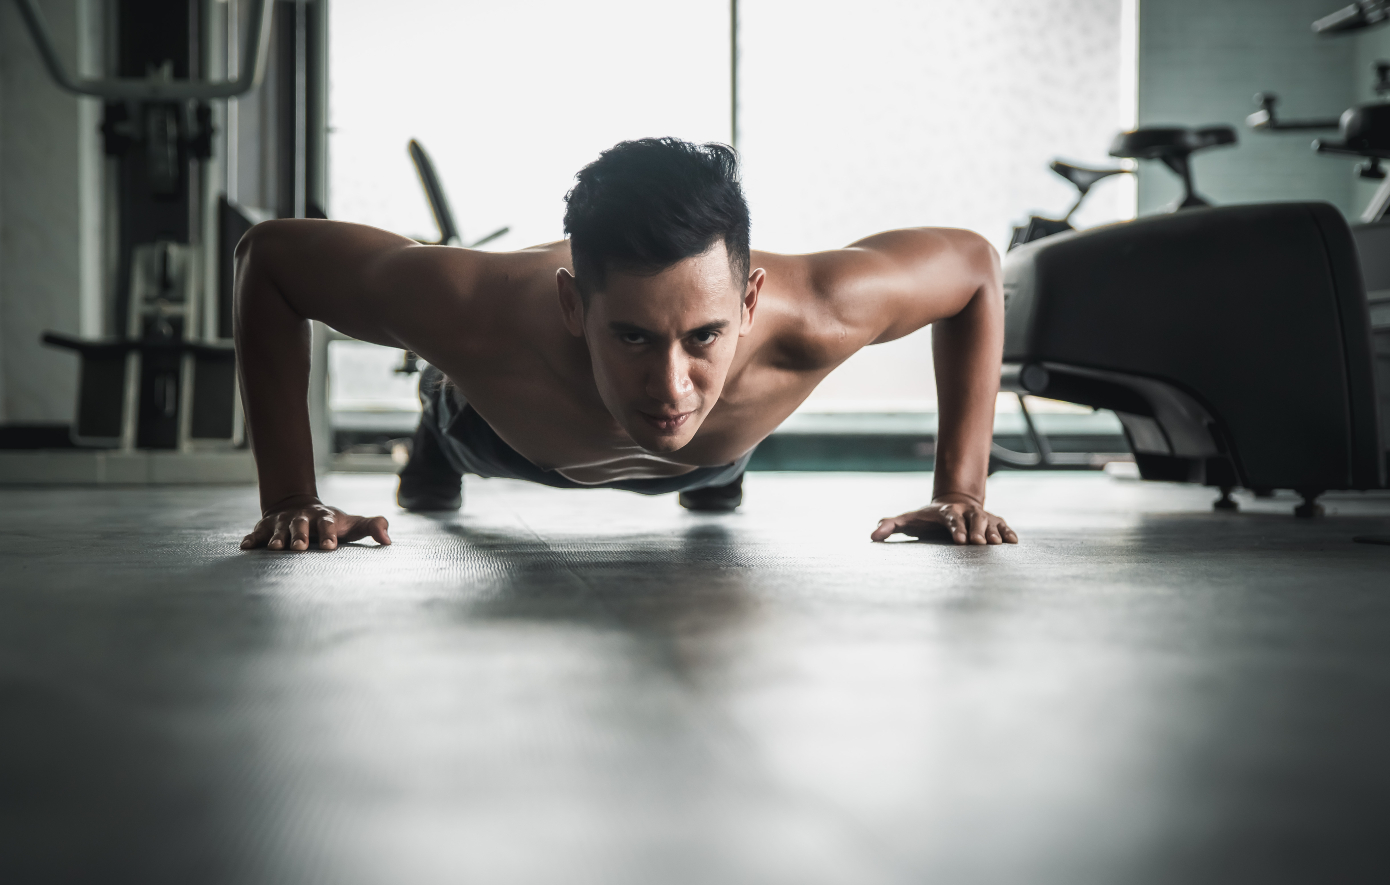 Οι 3 καλύτερες ασκήσεις που μπορείτε να κάνετε στο σπίτι για σωματική διάπλαση